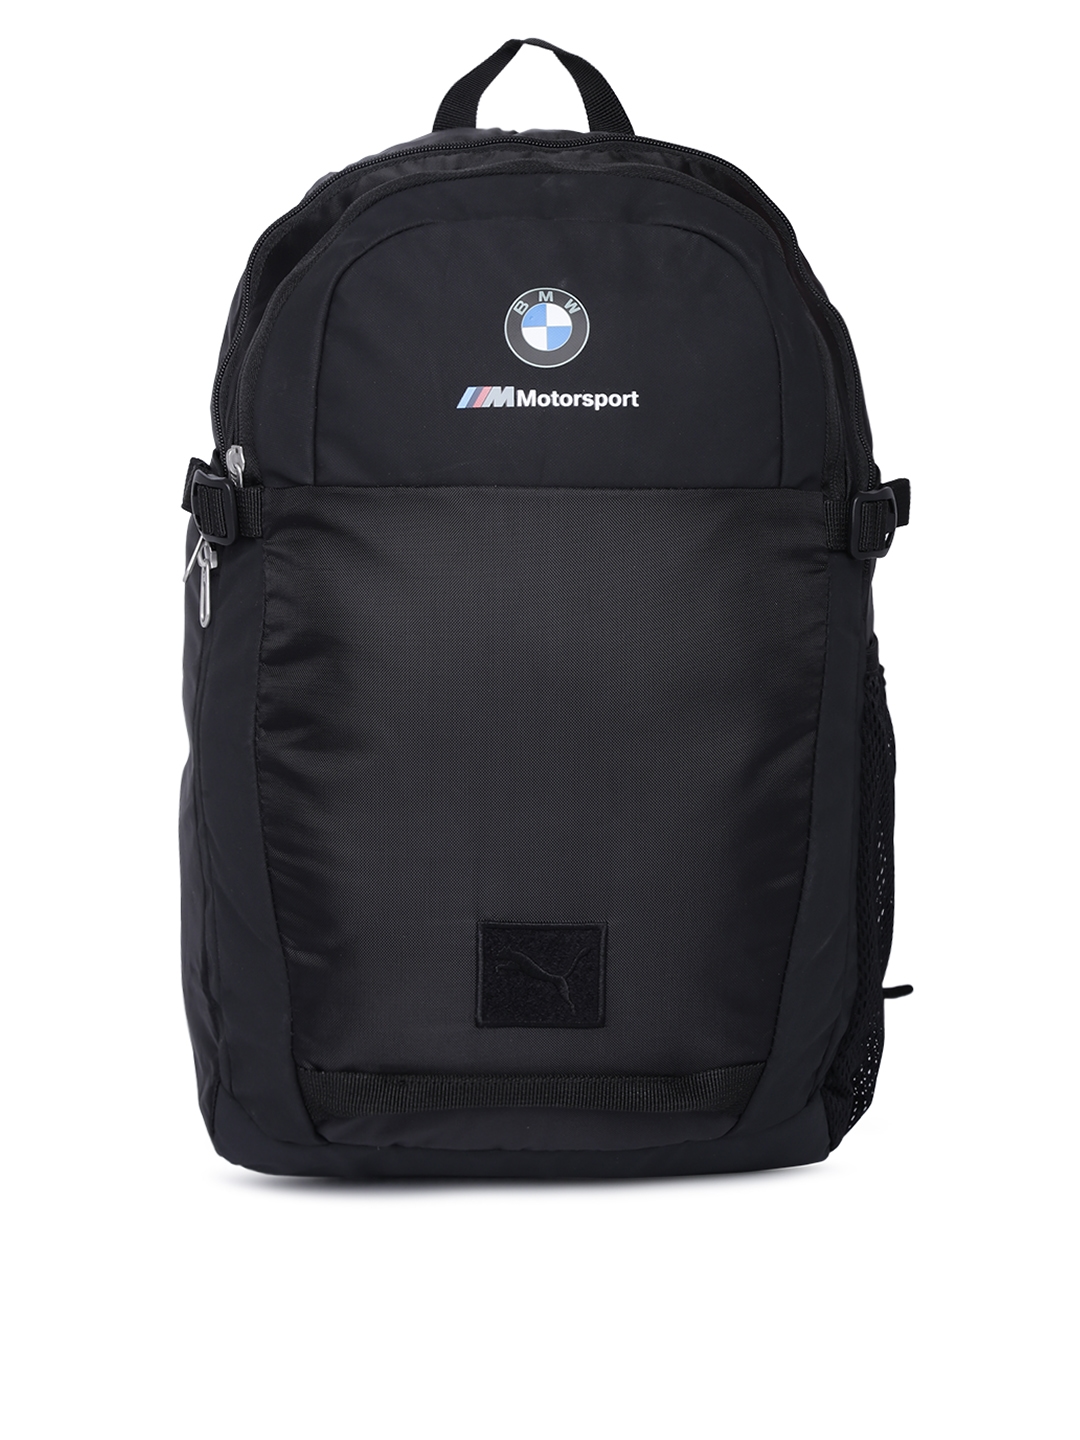 puma motorsport backpack